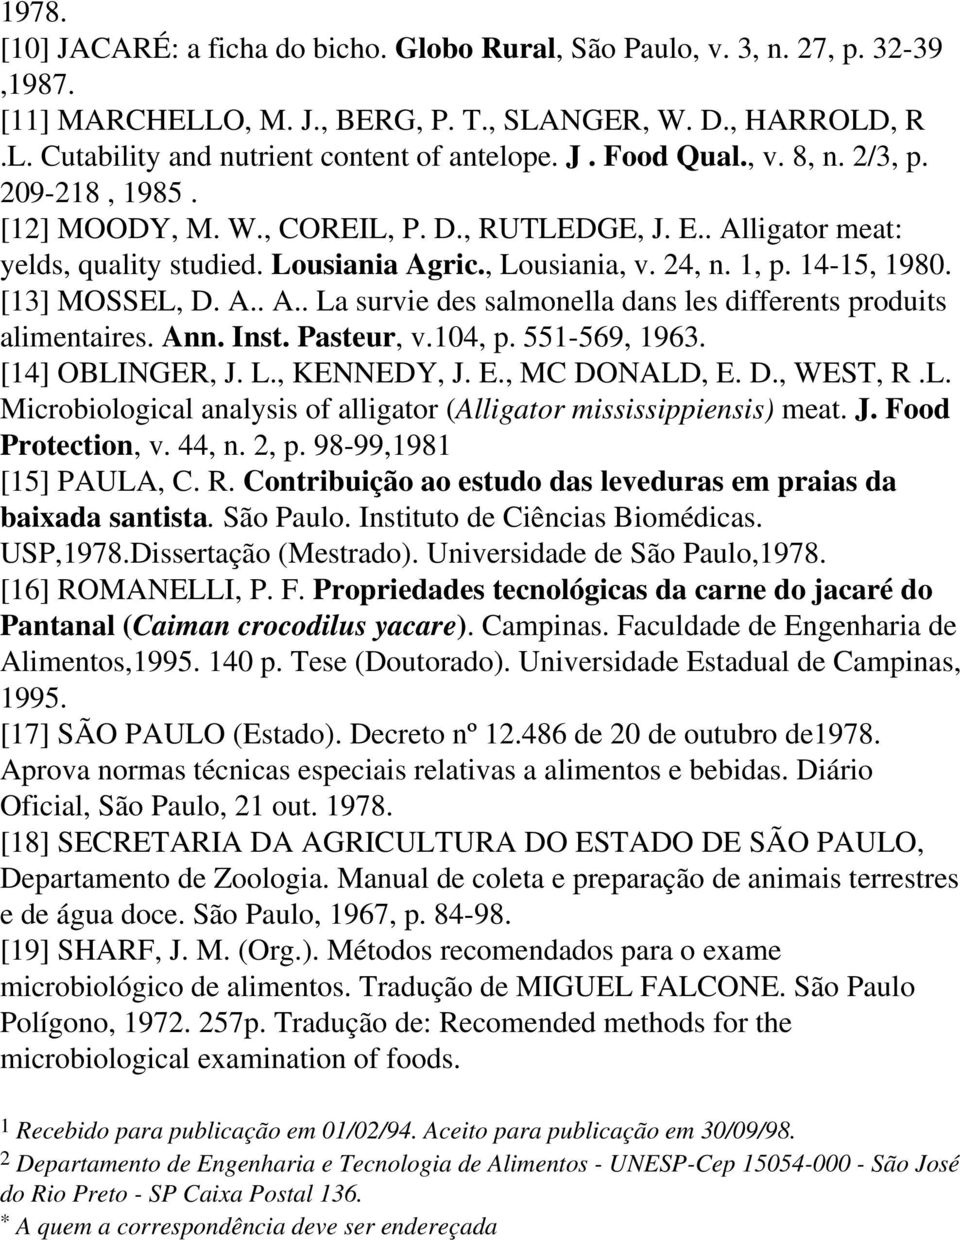 [13] MOSSEL, D. A.. A.. La survie des salmonella dans les differents produits alimentaires. Ann. Inst. Pasteur, v.104, p. 551-569, 1963. [14] OBLINGER, J. L., KENNEDY, J. E., MC DONALD, E. D., WEST, R.